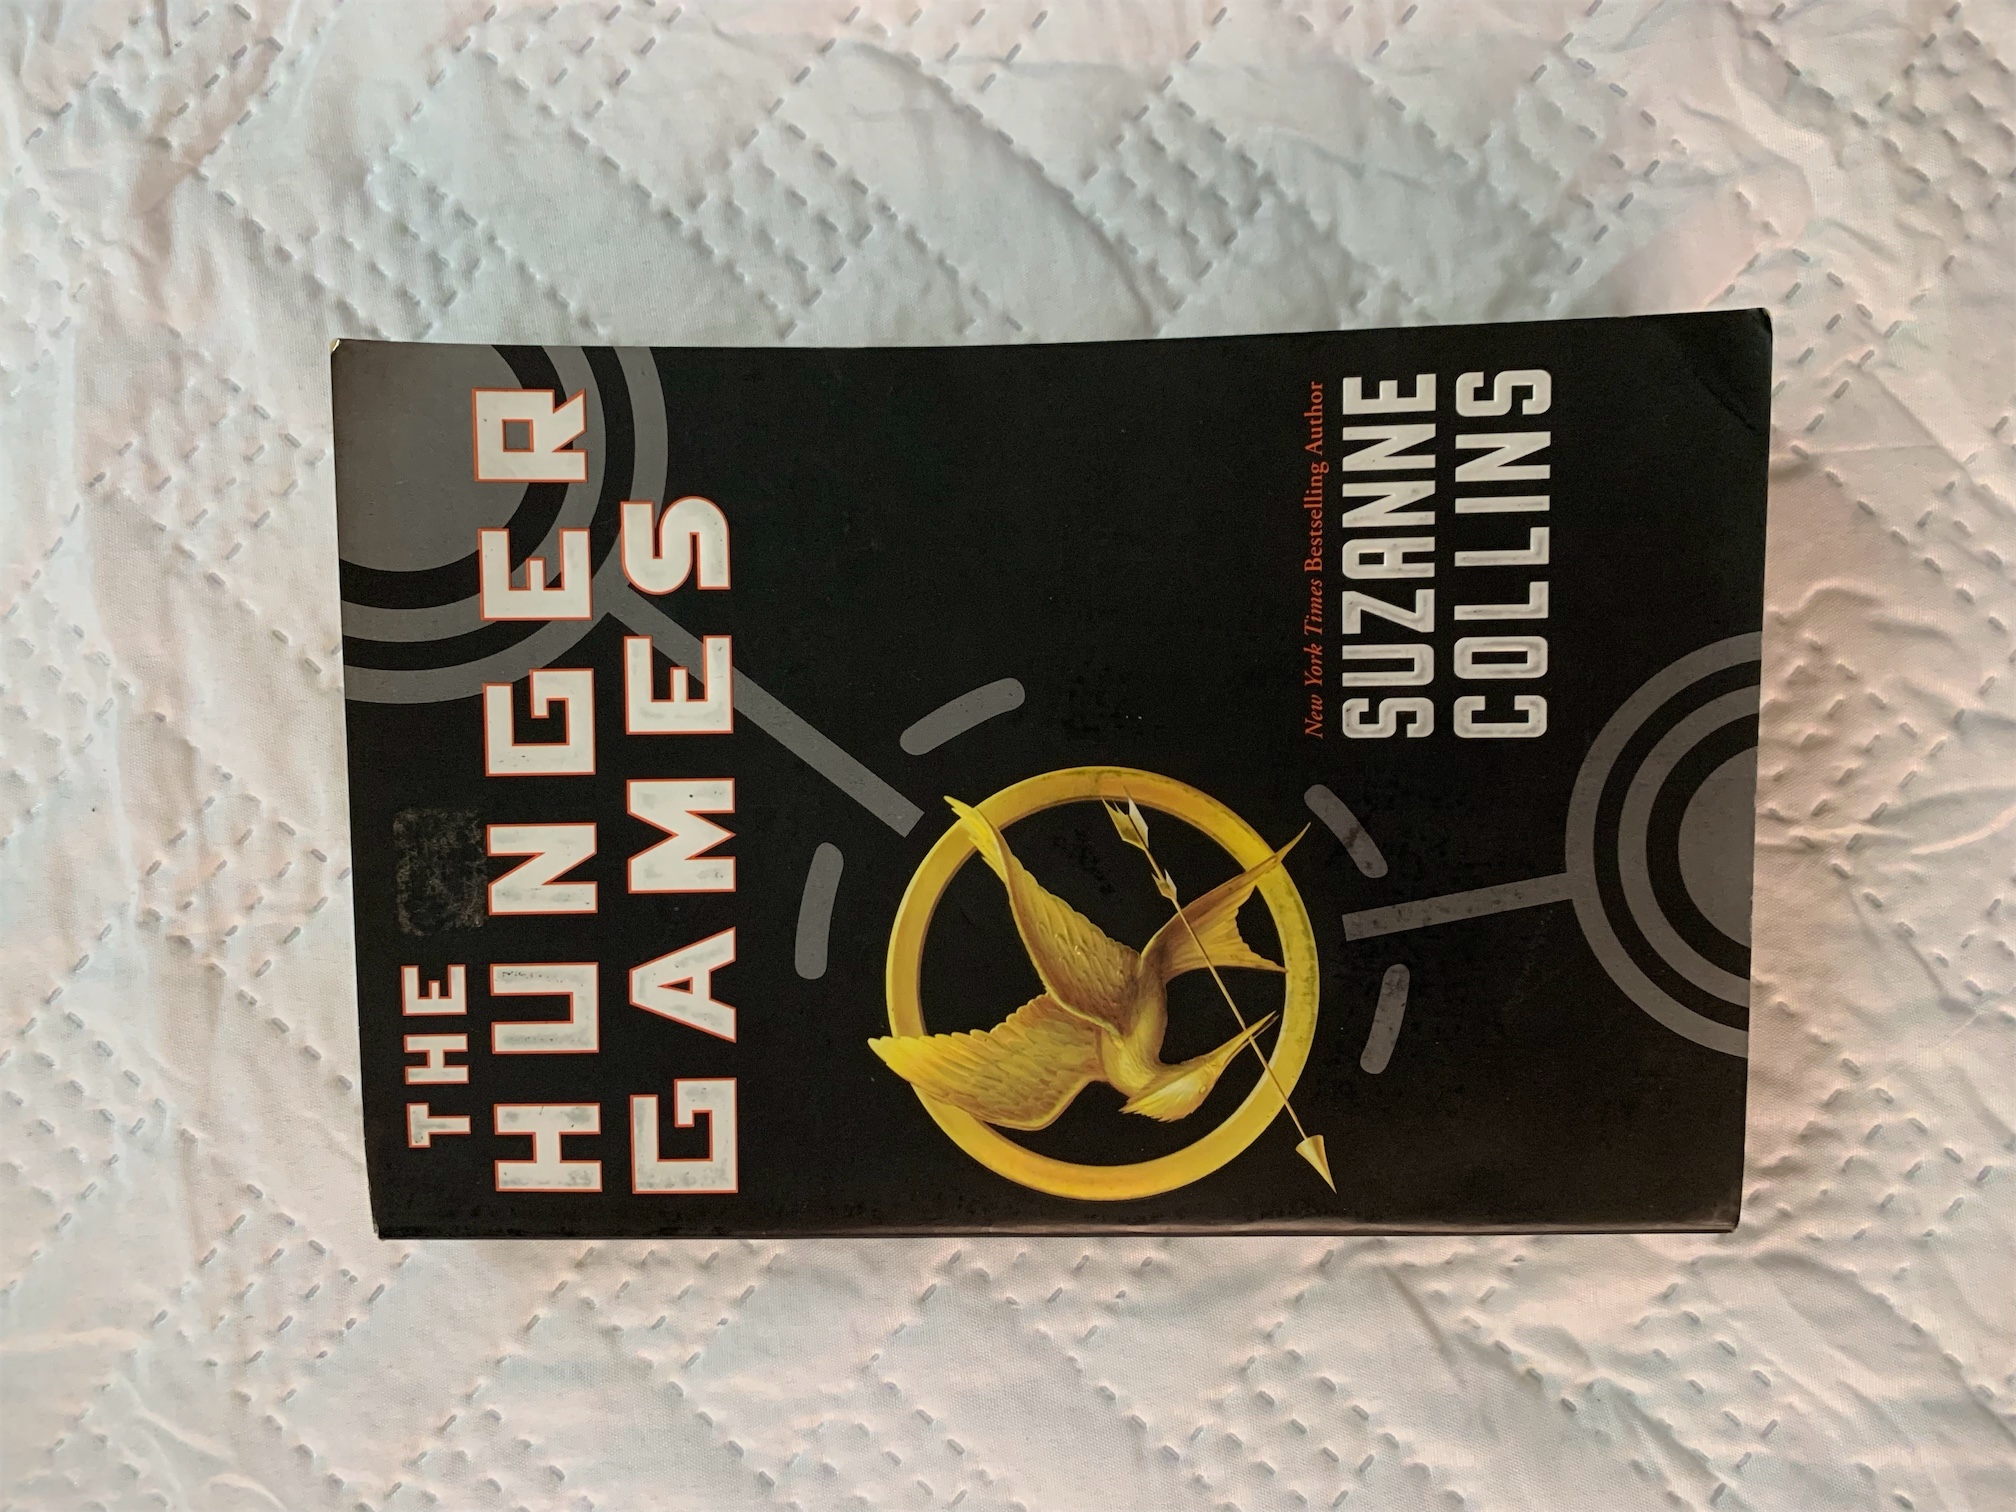 libros y revistas - The Hunger Games 0